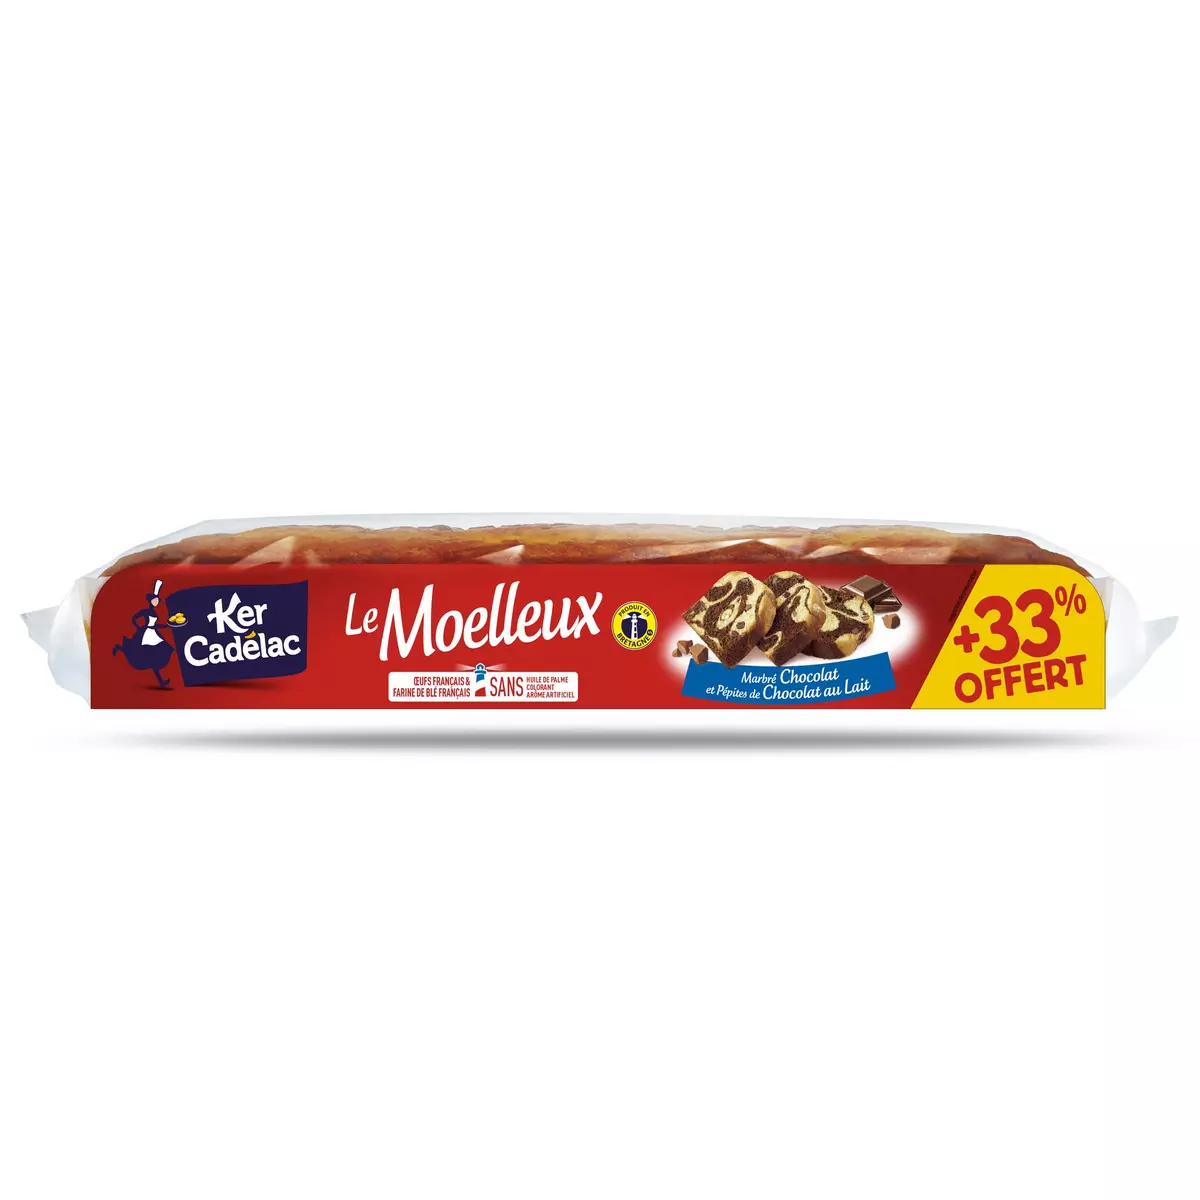 KER CADELAC Marbré au chocolat et aux pépites de chocolat au lait Le Moelleux 562g + 185g offert